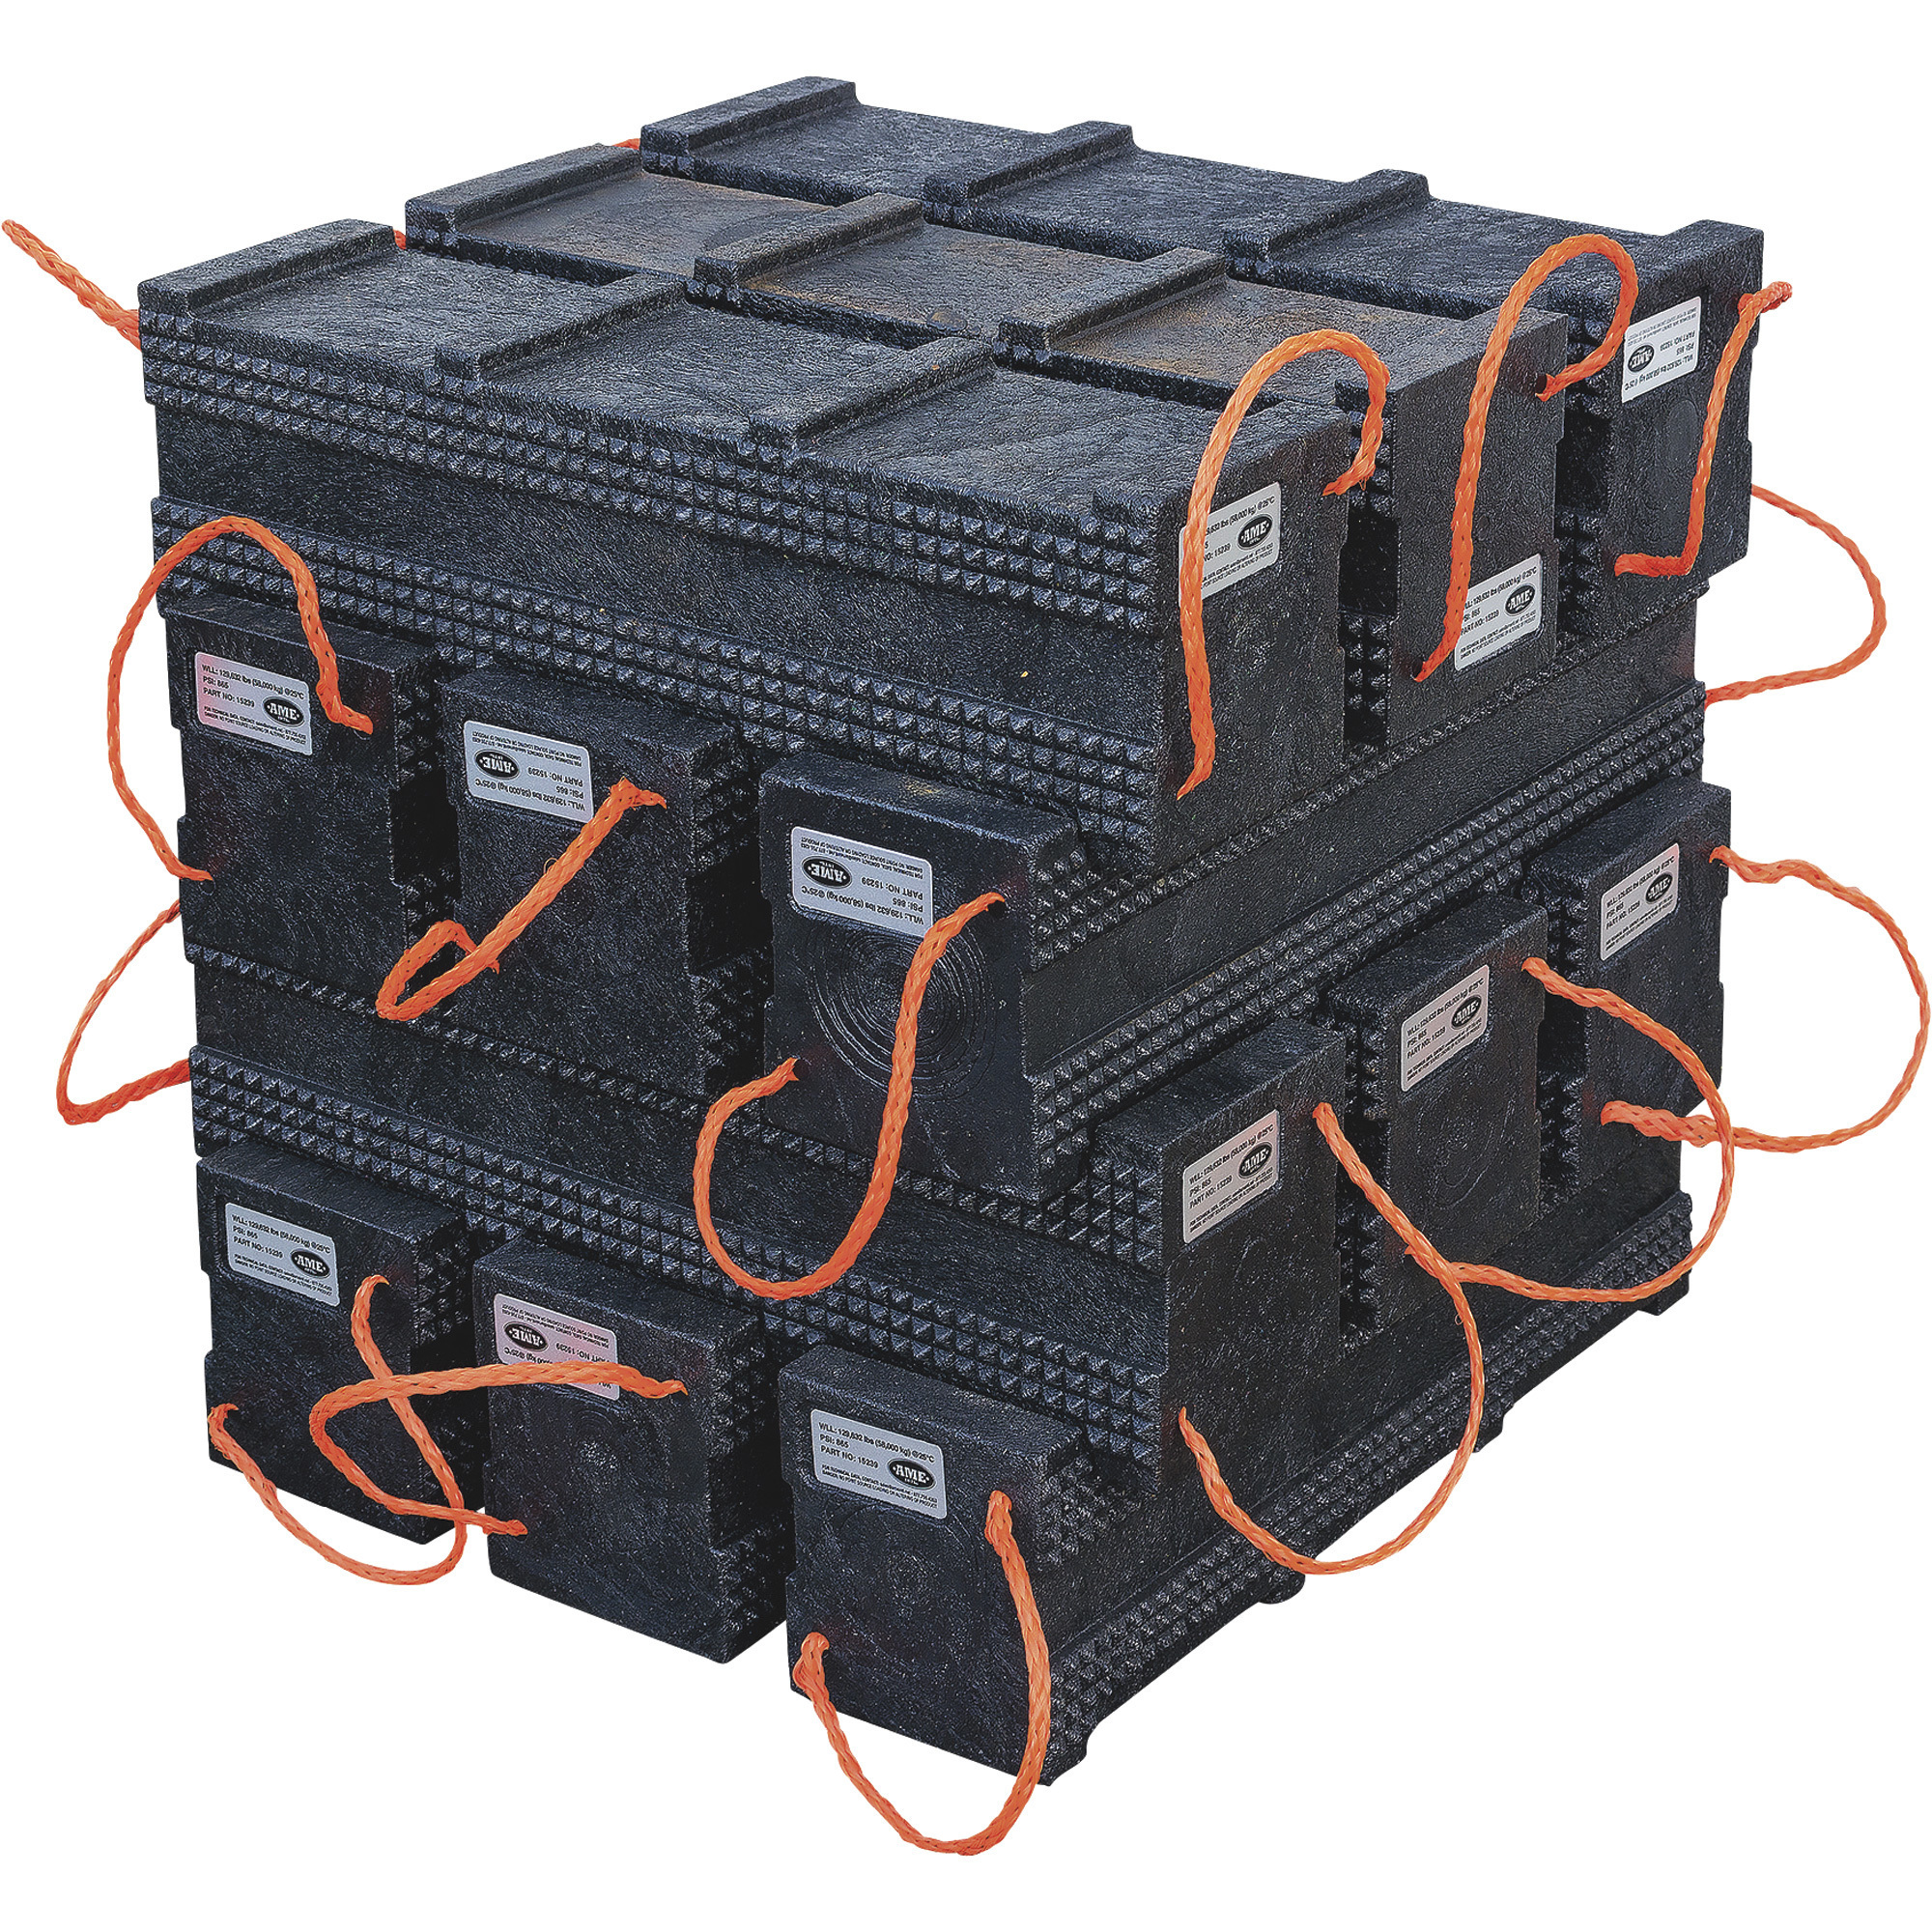 AME International 12-Piece Primo Super Stacker Cribbing Block Kit â 4ft. x 4ft., Black, Model 15260P